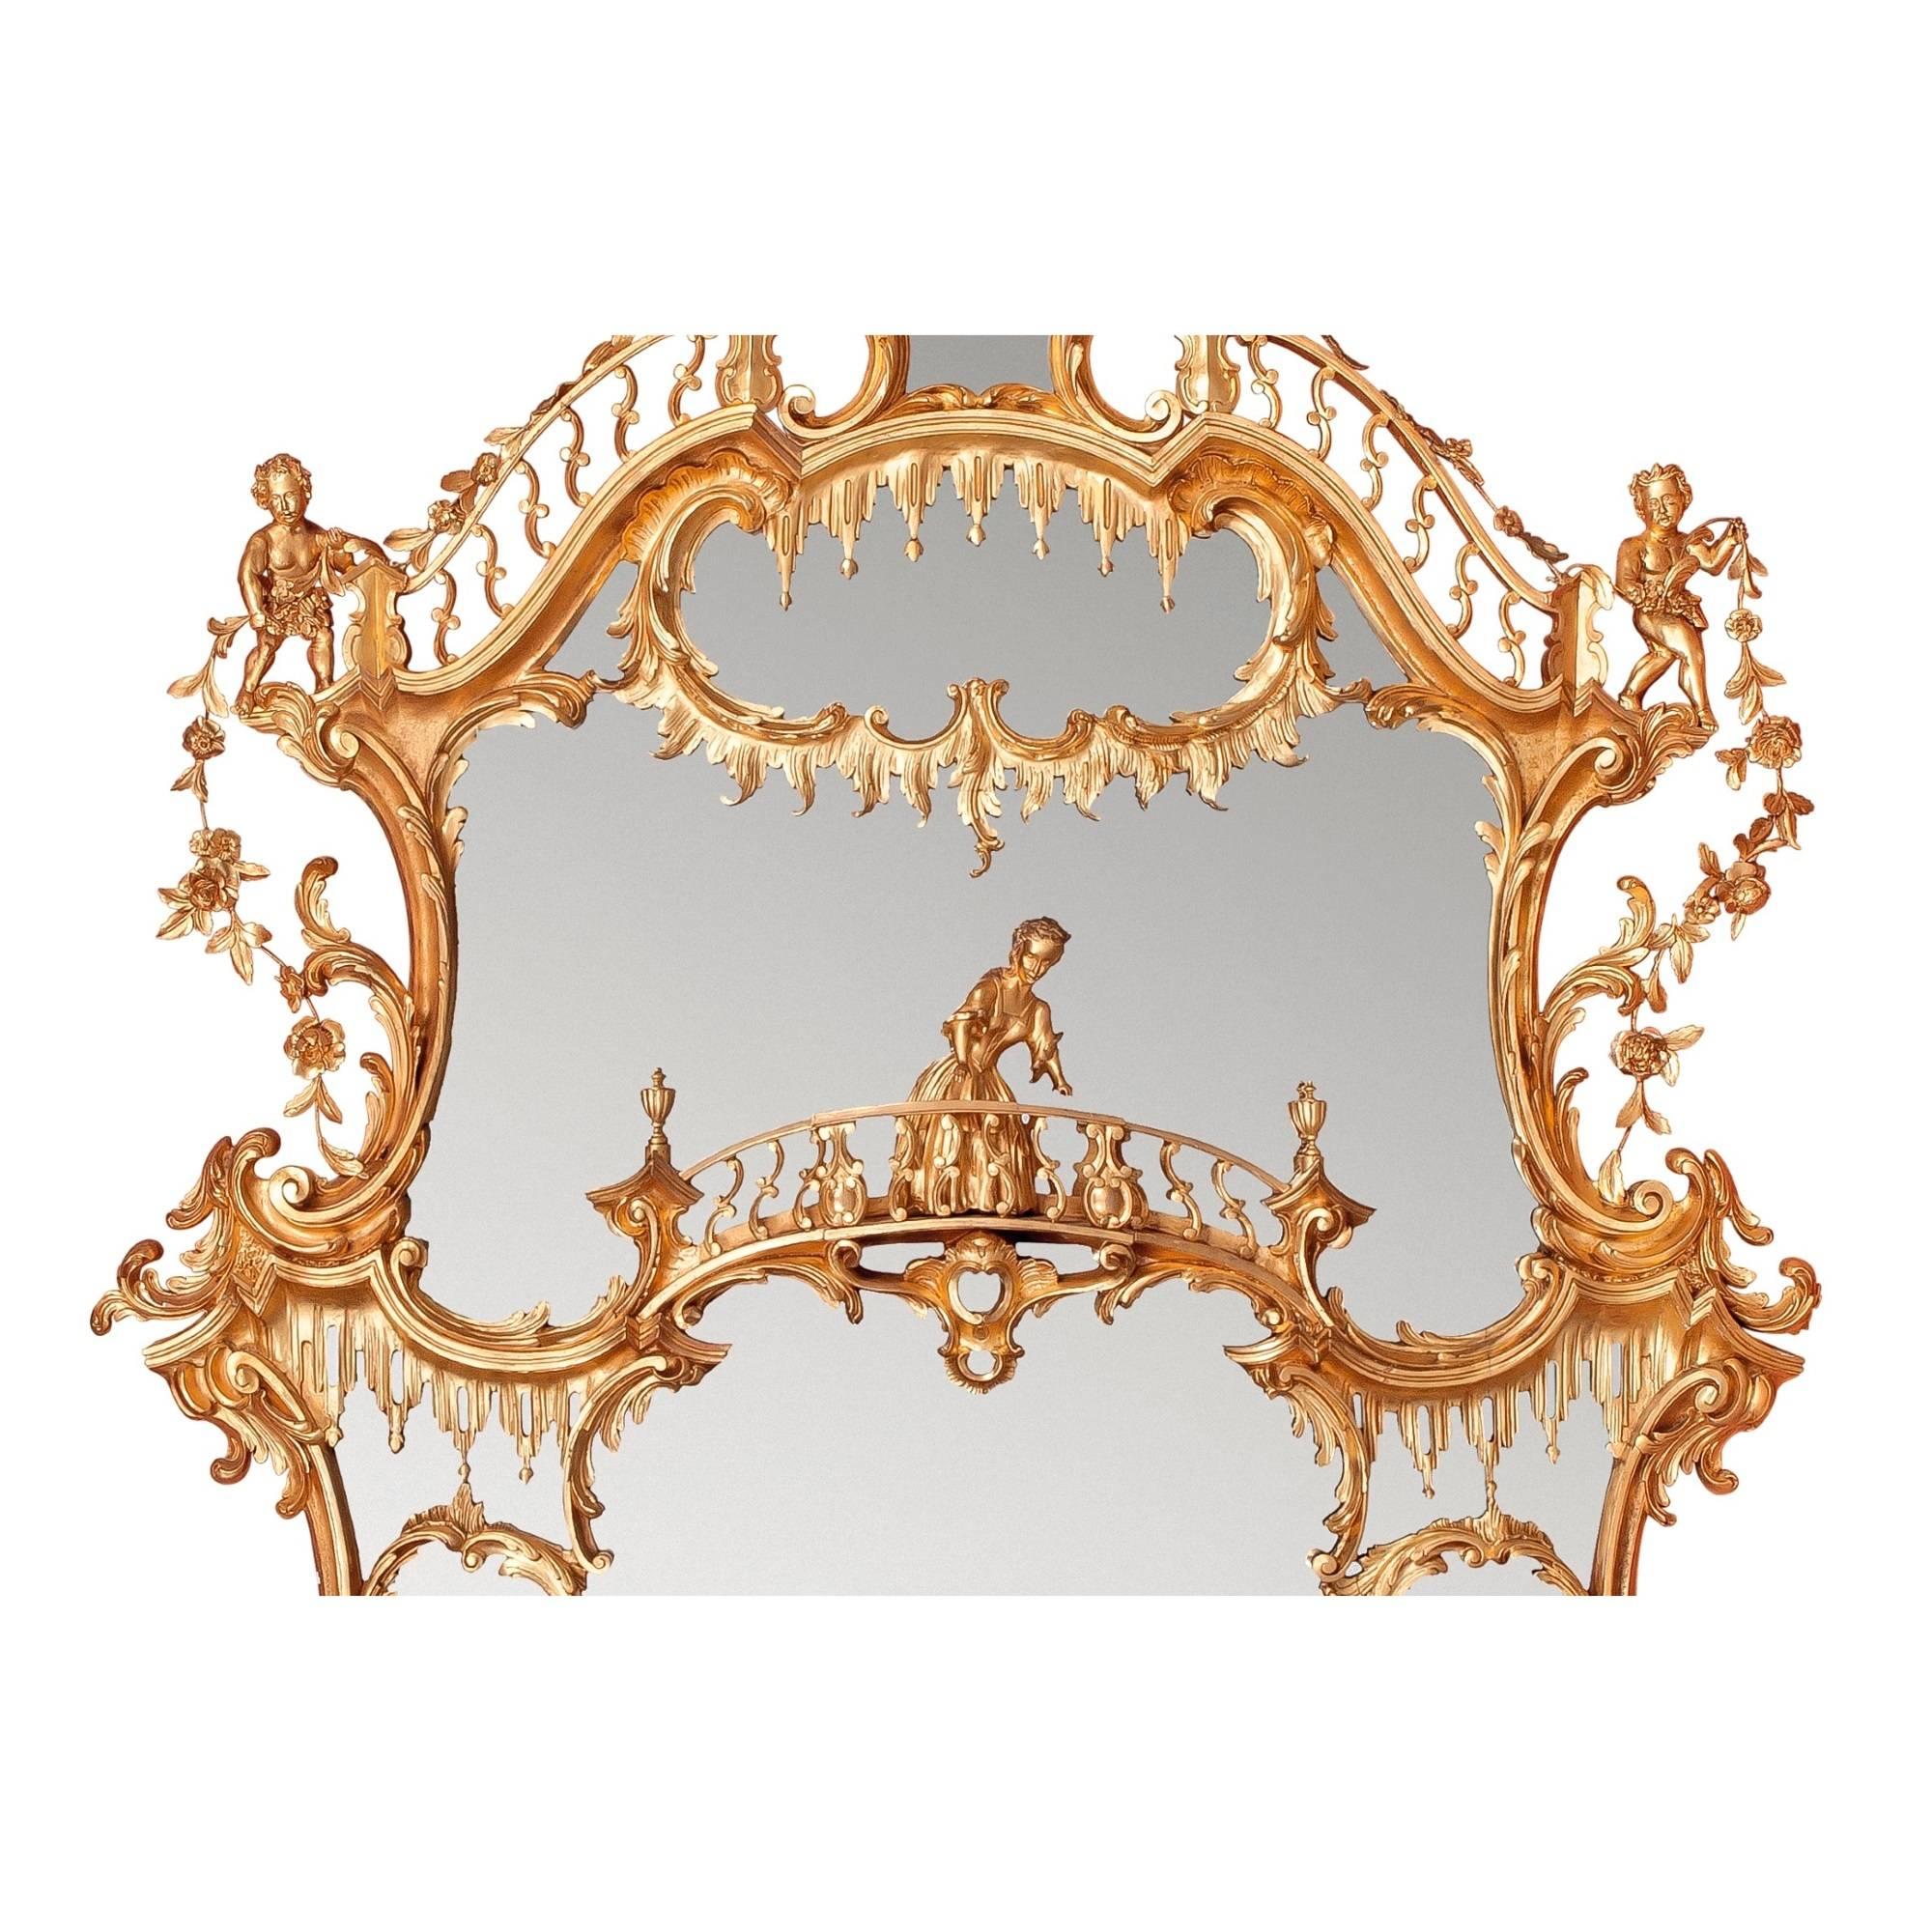 Cet exceptionnel miroir surmonté d'un manteau a une provenance prestigieuse, ayant fait partie de la collection d'une célèbre famille aristocratique anglaise. L'œuvre est surmontée d'un aigle déployé portant dans son bec des guirlandes de fleurs de